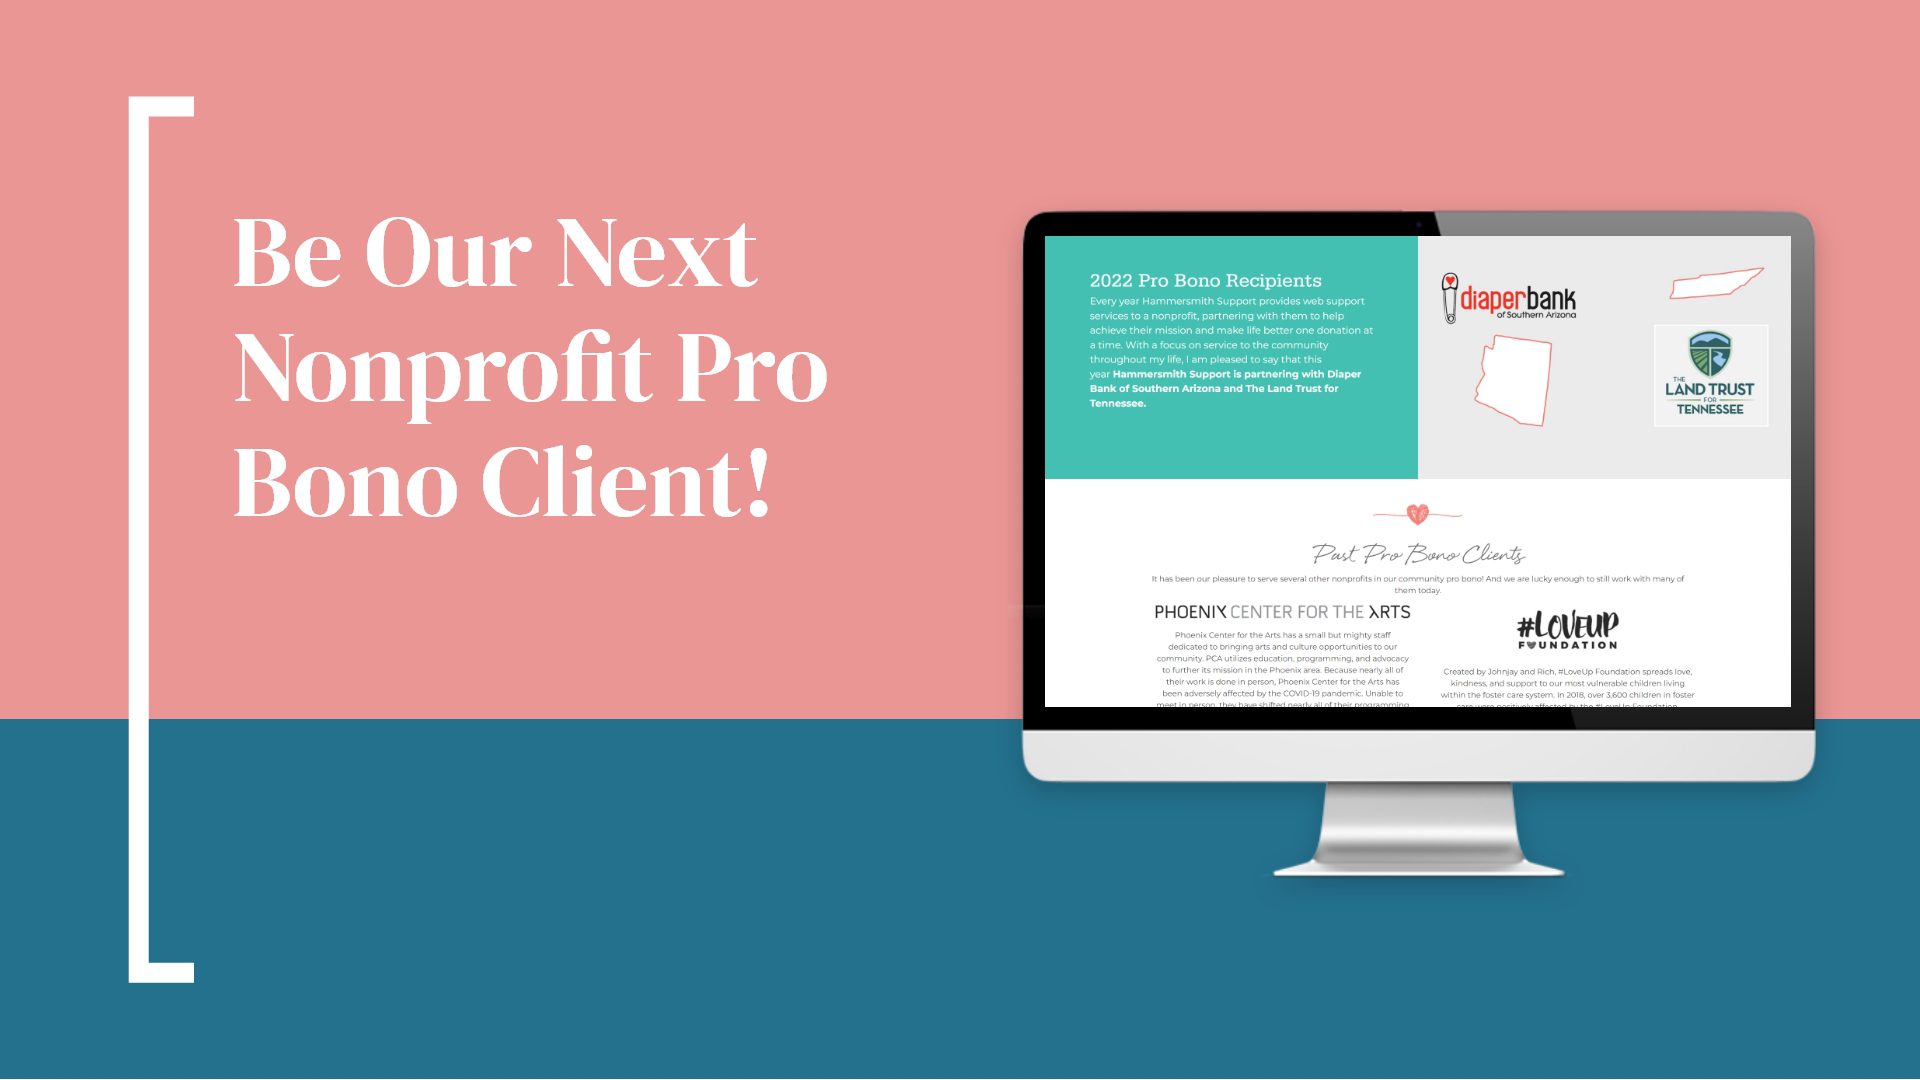 Be Our Next Nonprofit Pro Bono Client!